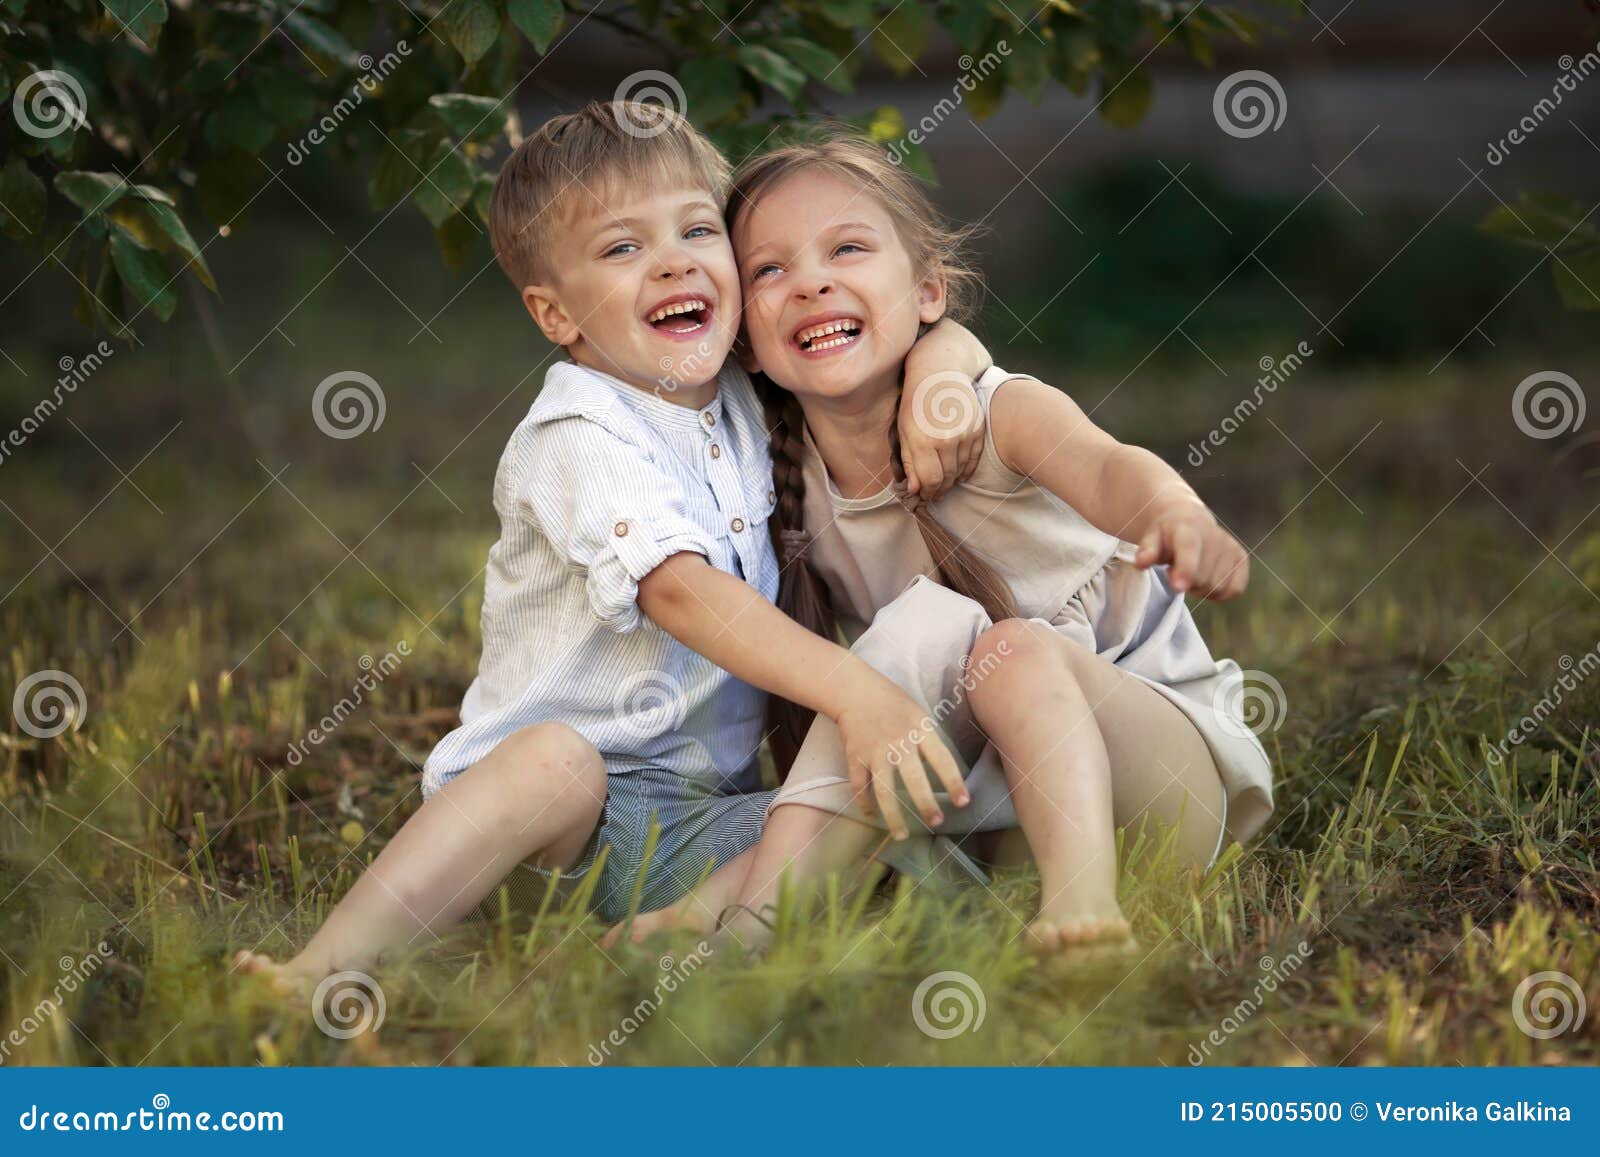 Смешные Фото Мальчик И Девочка